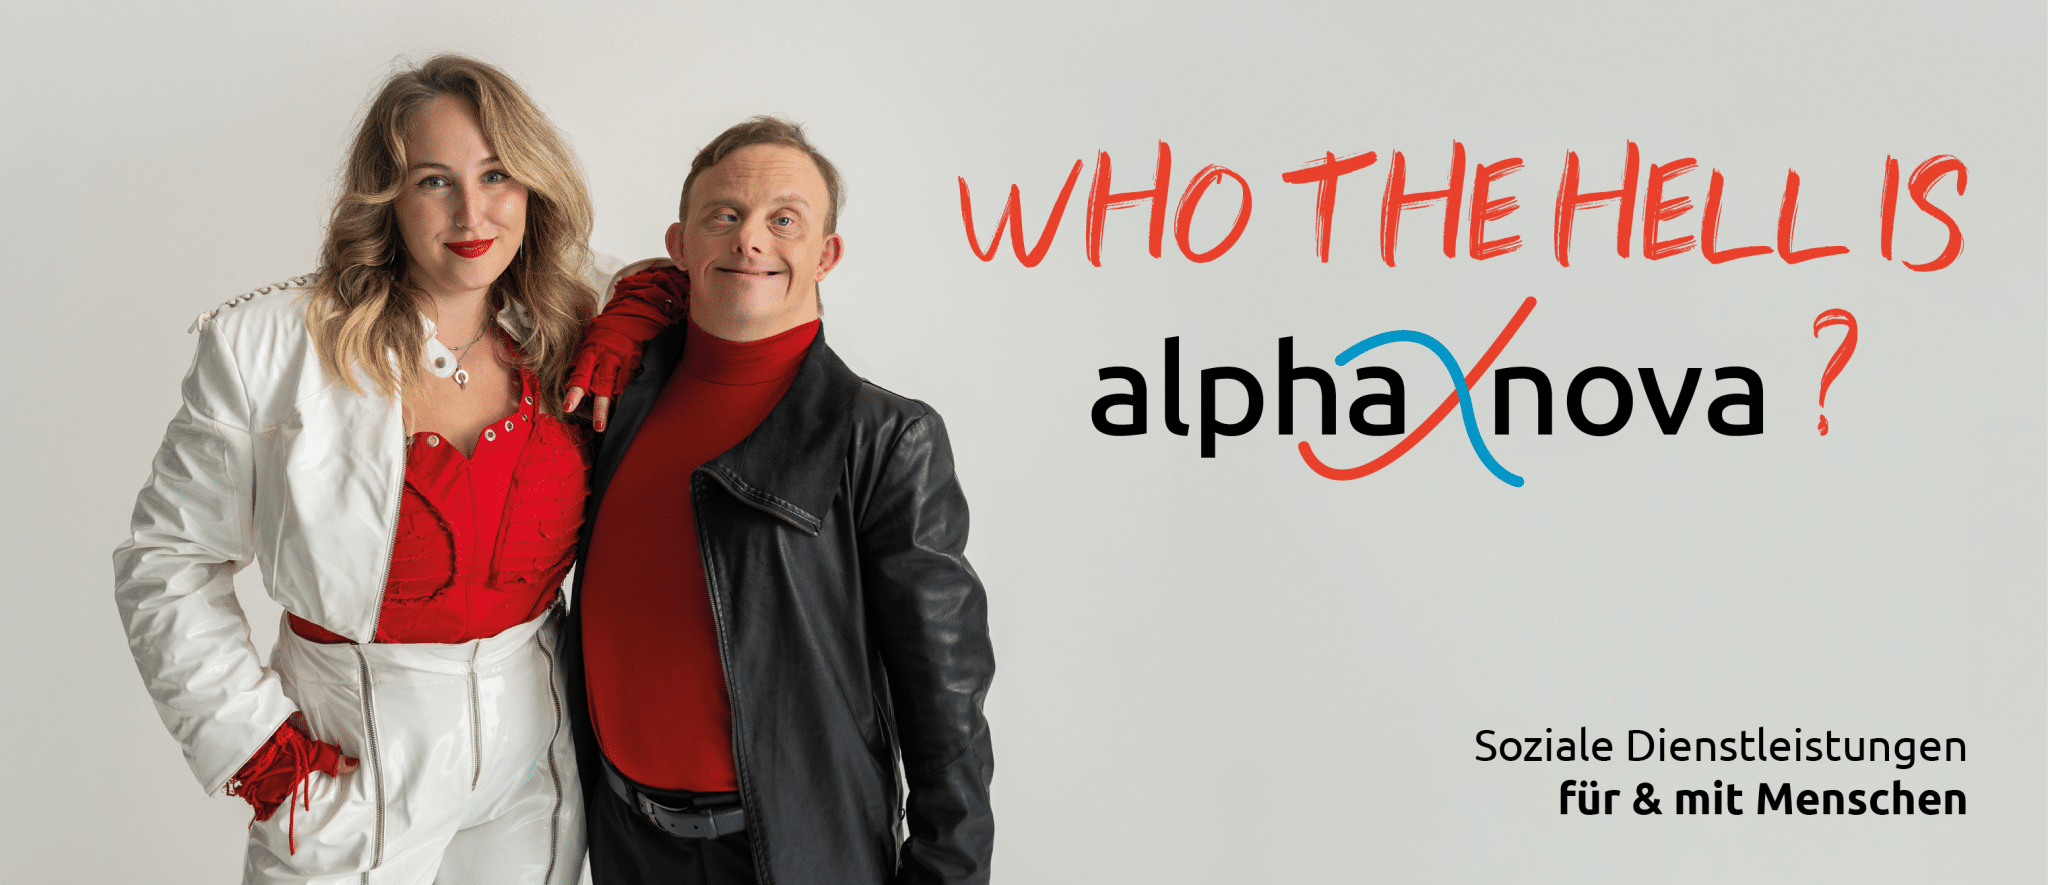 who the hell is alpha nova?